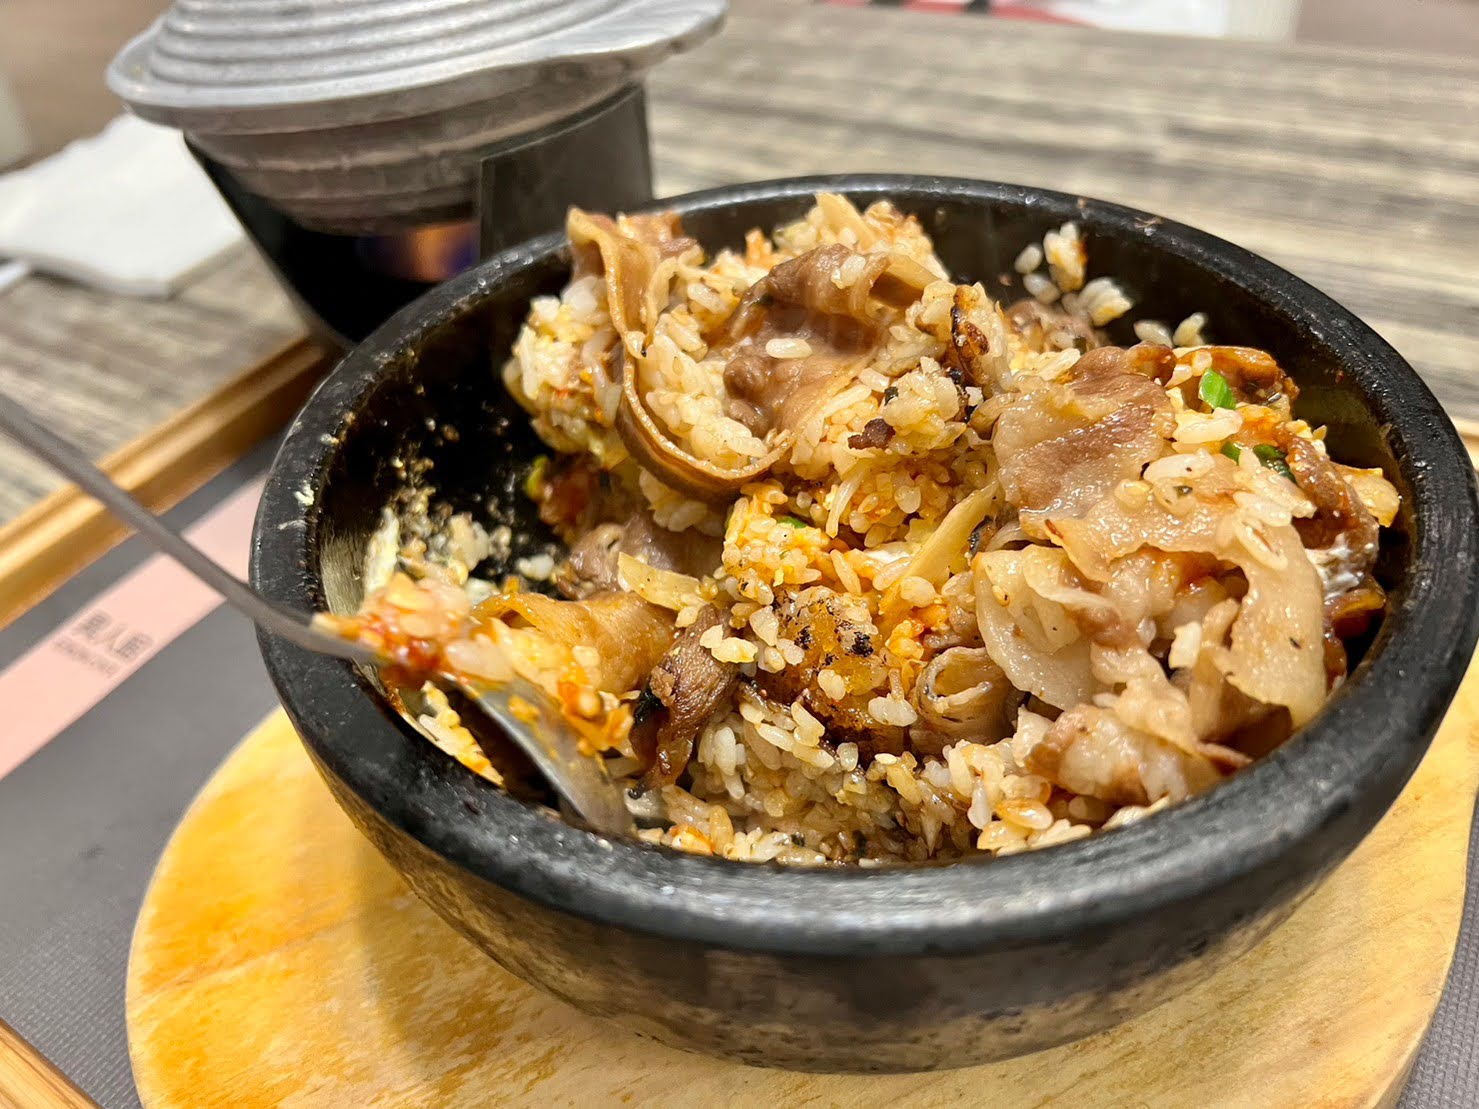 新竹美食推薦 竹北咖啡廳 川菜、韓式料理、拉麵、咖哩飯 聚餐聚會 異人館評價